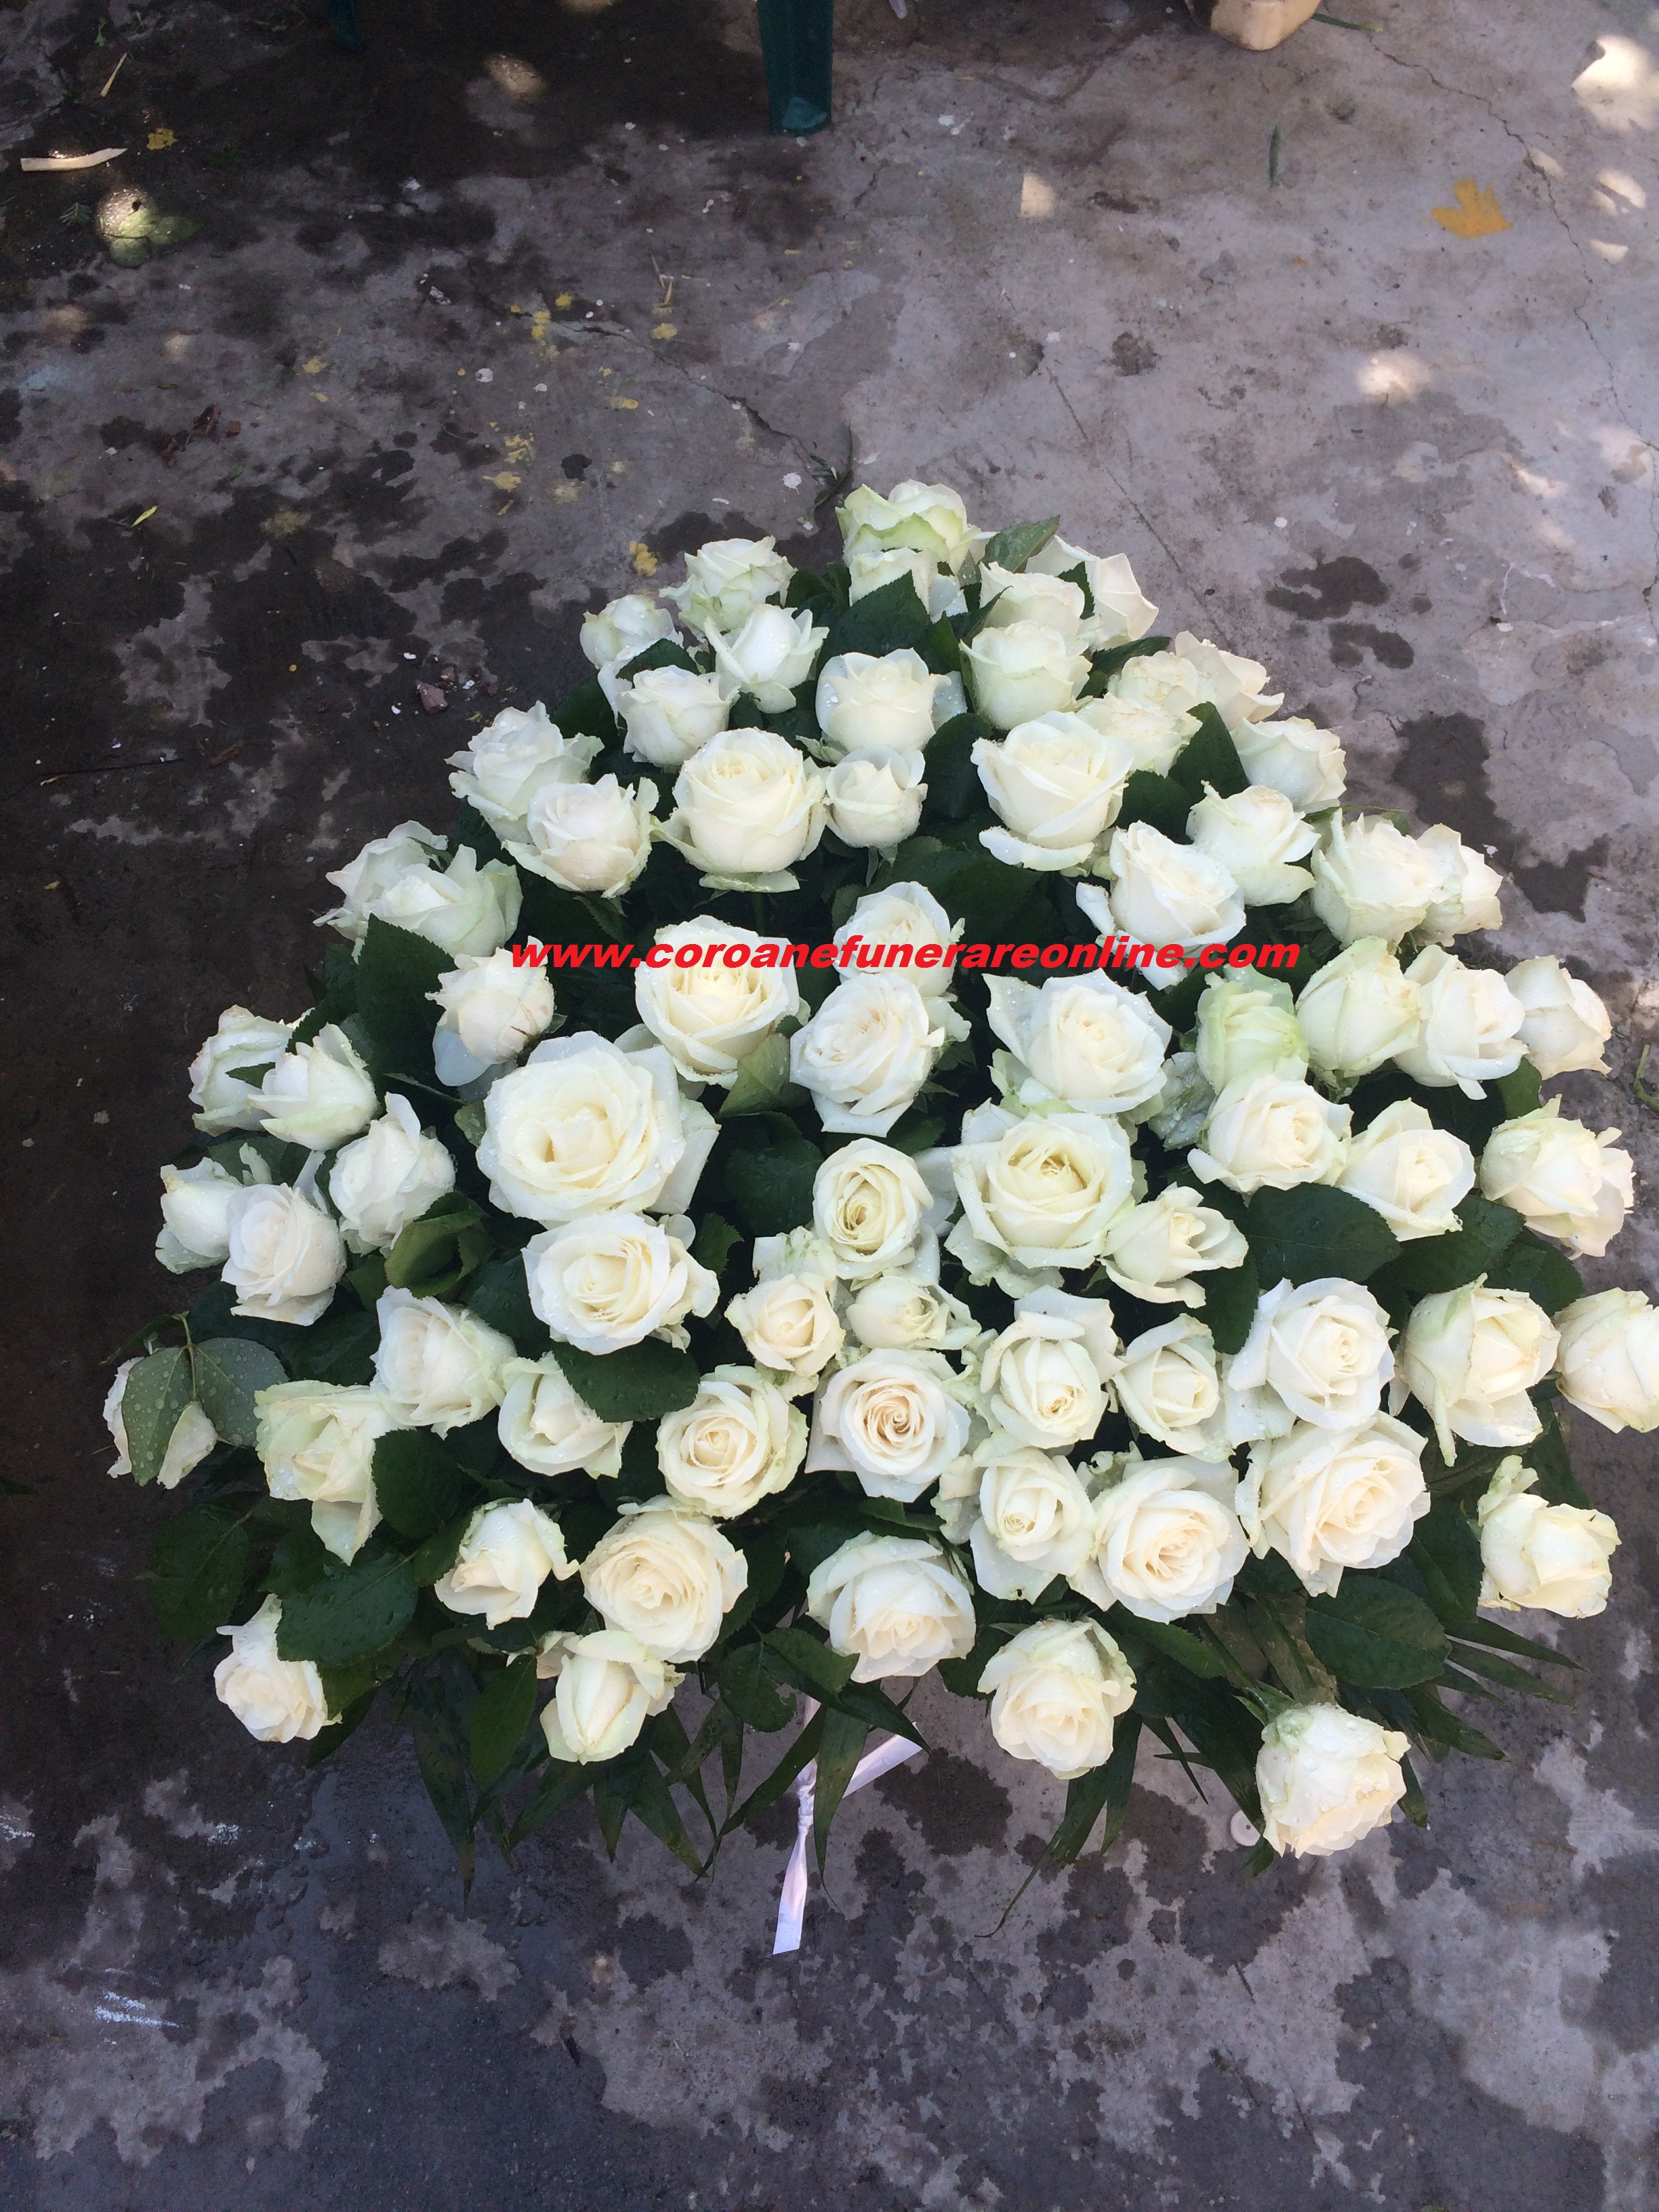 coroana funerara inima trandafiri albi